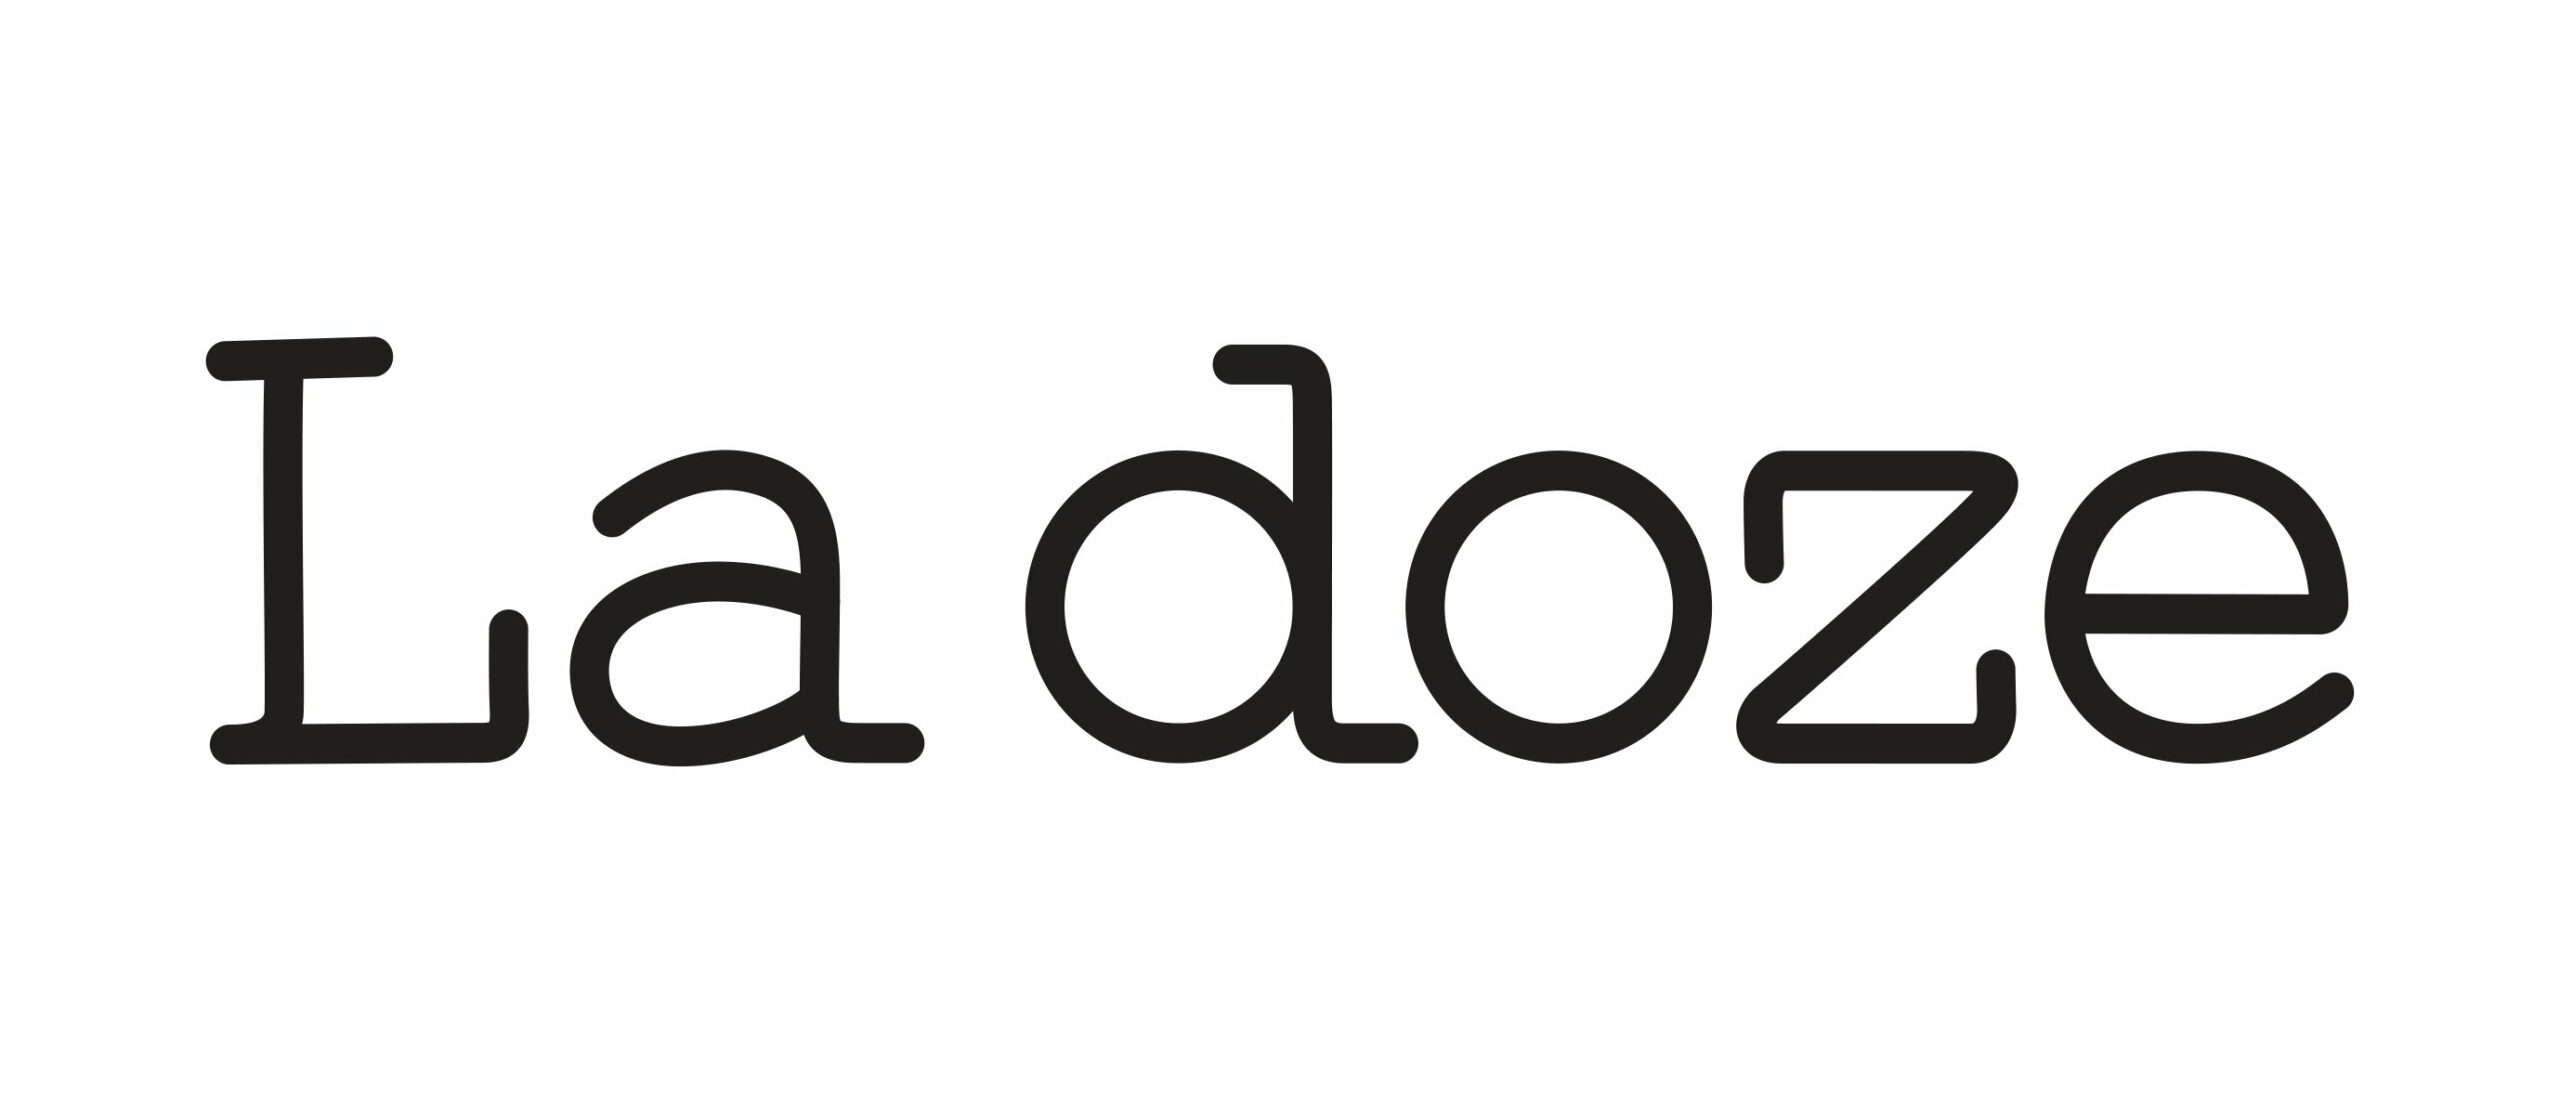 La Doze Logo